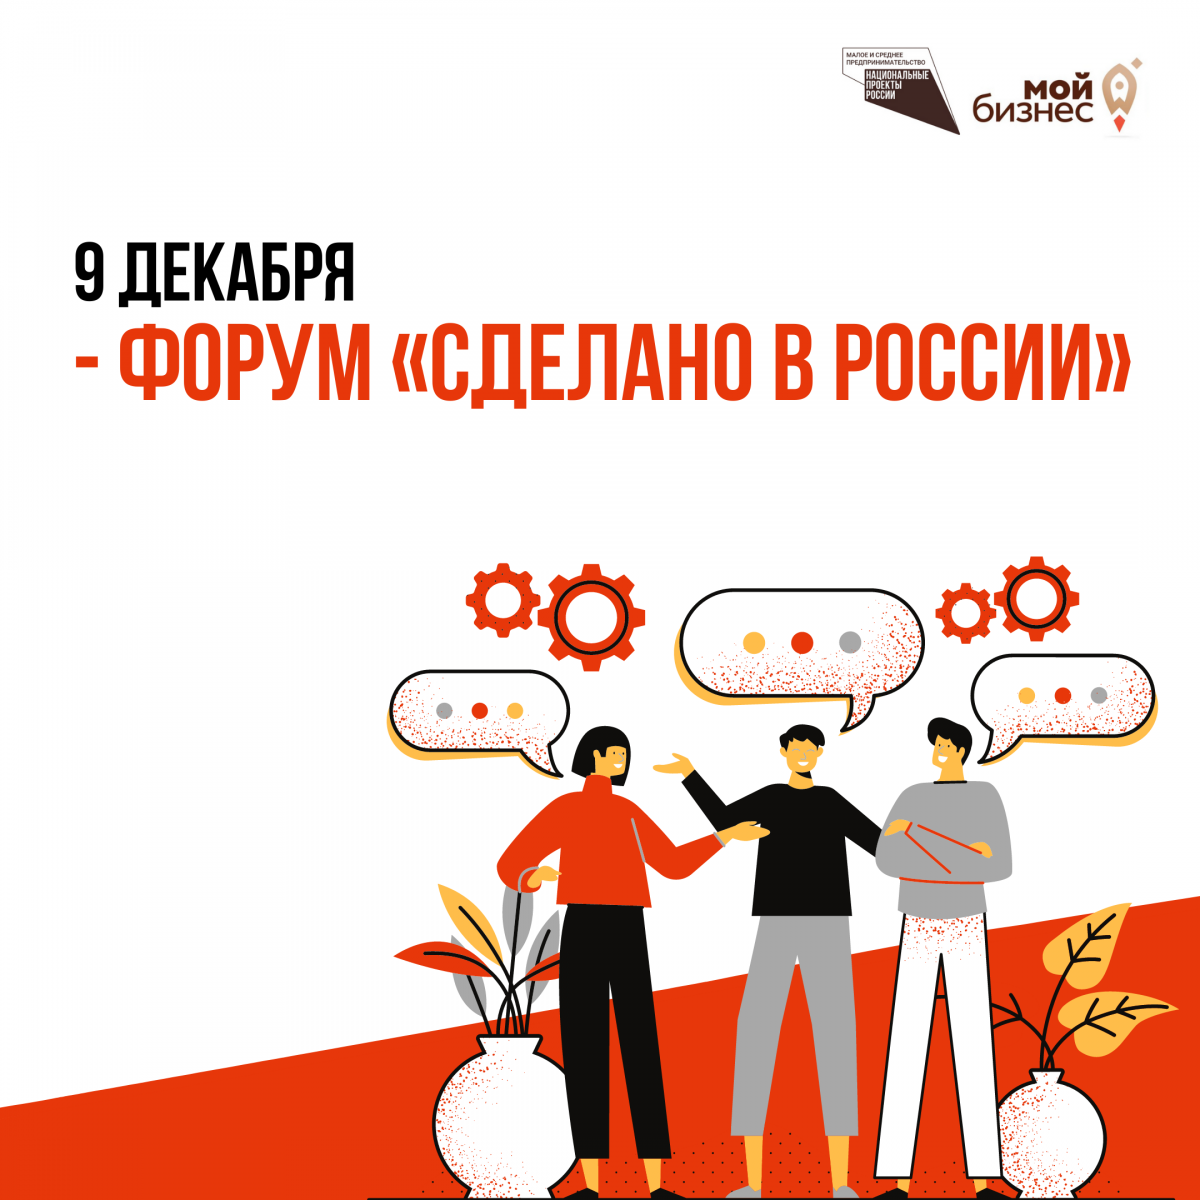 Приглашаем поучаствовать в форуме «Сделано в России», который пройдет 9 декабря 2020 года в онлайн и офлайн форматах